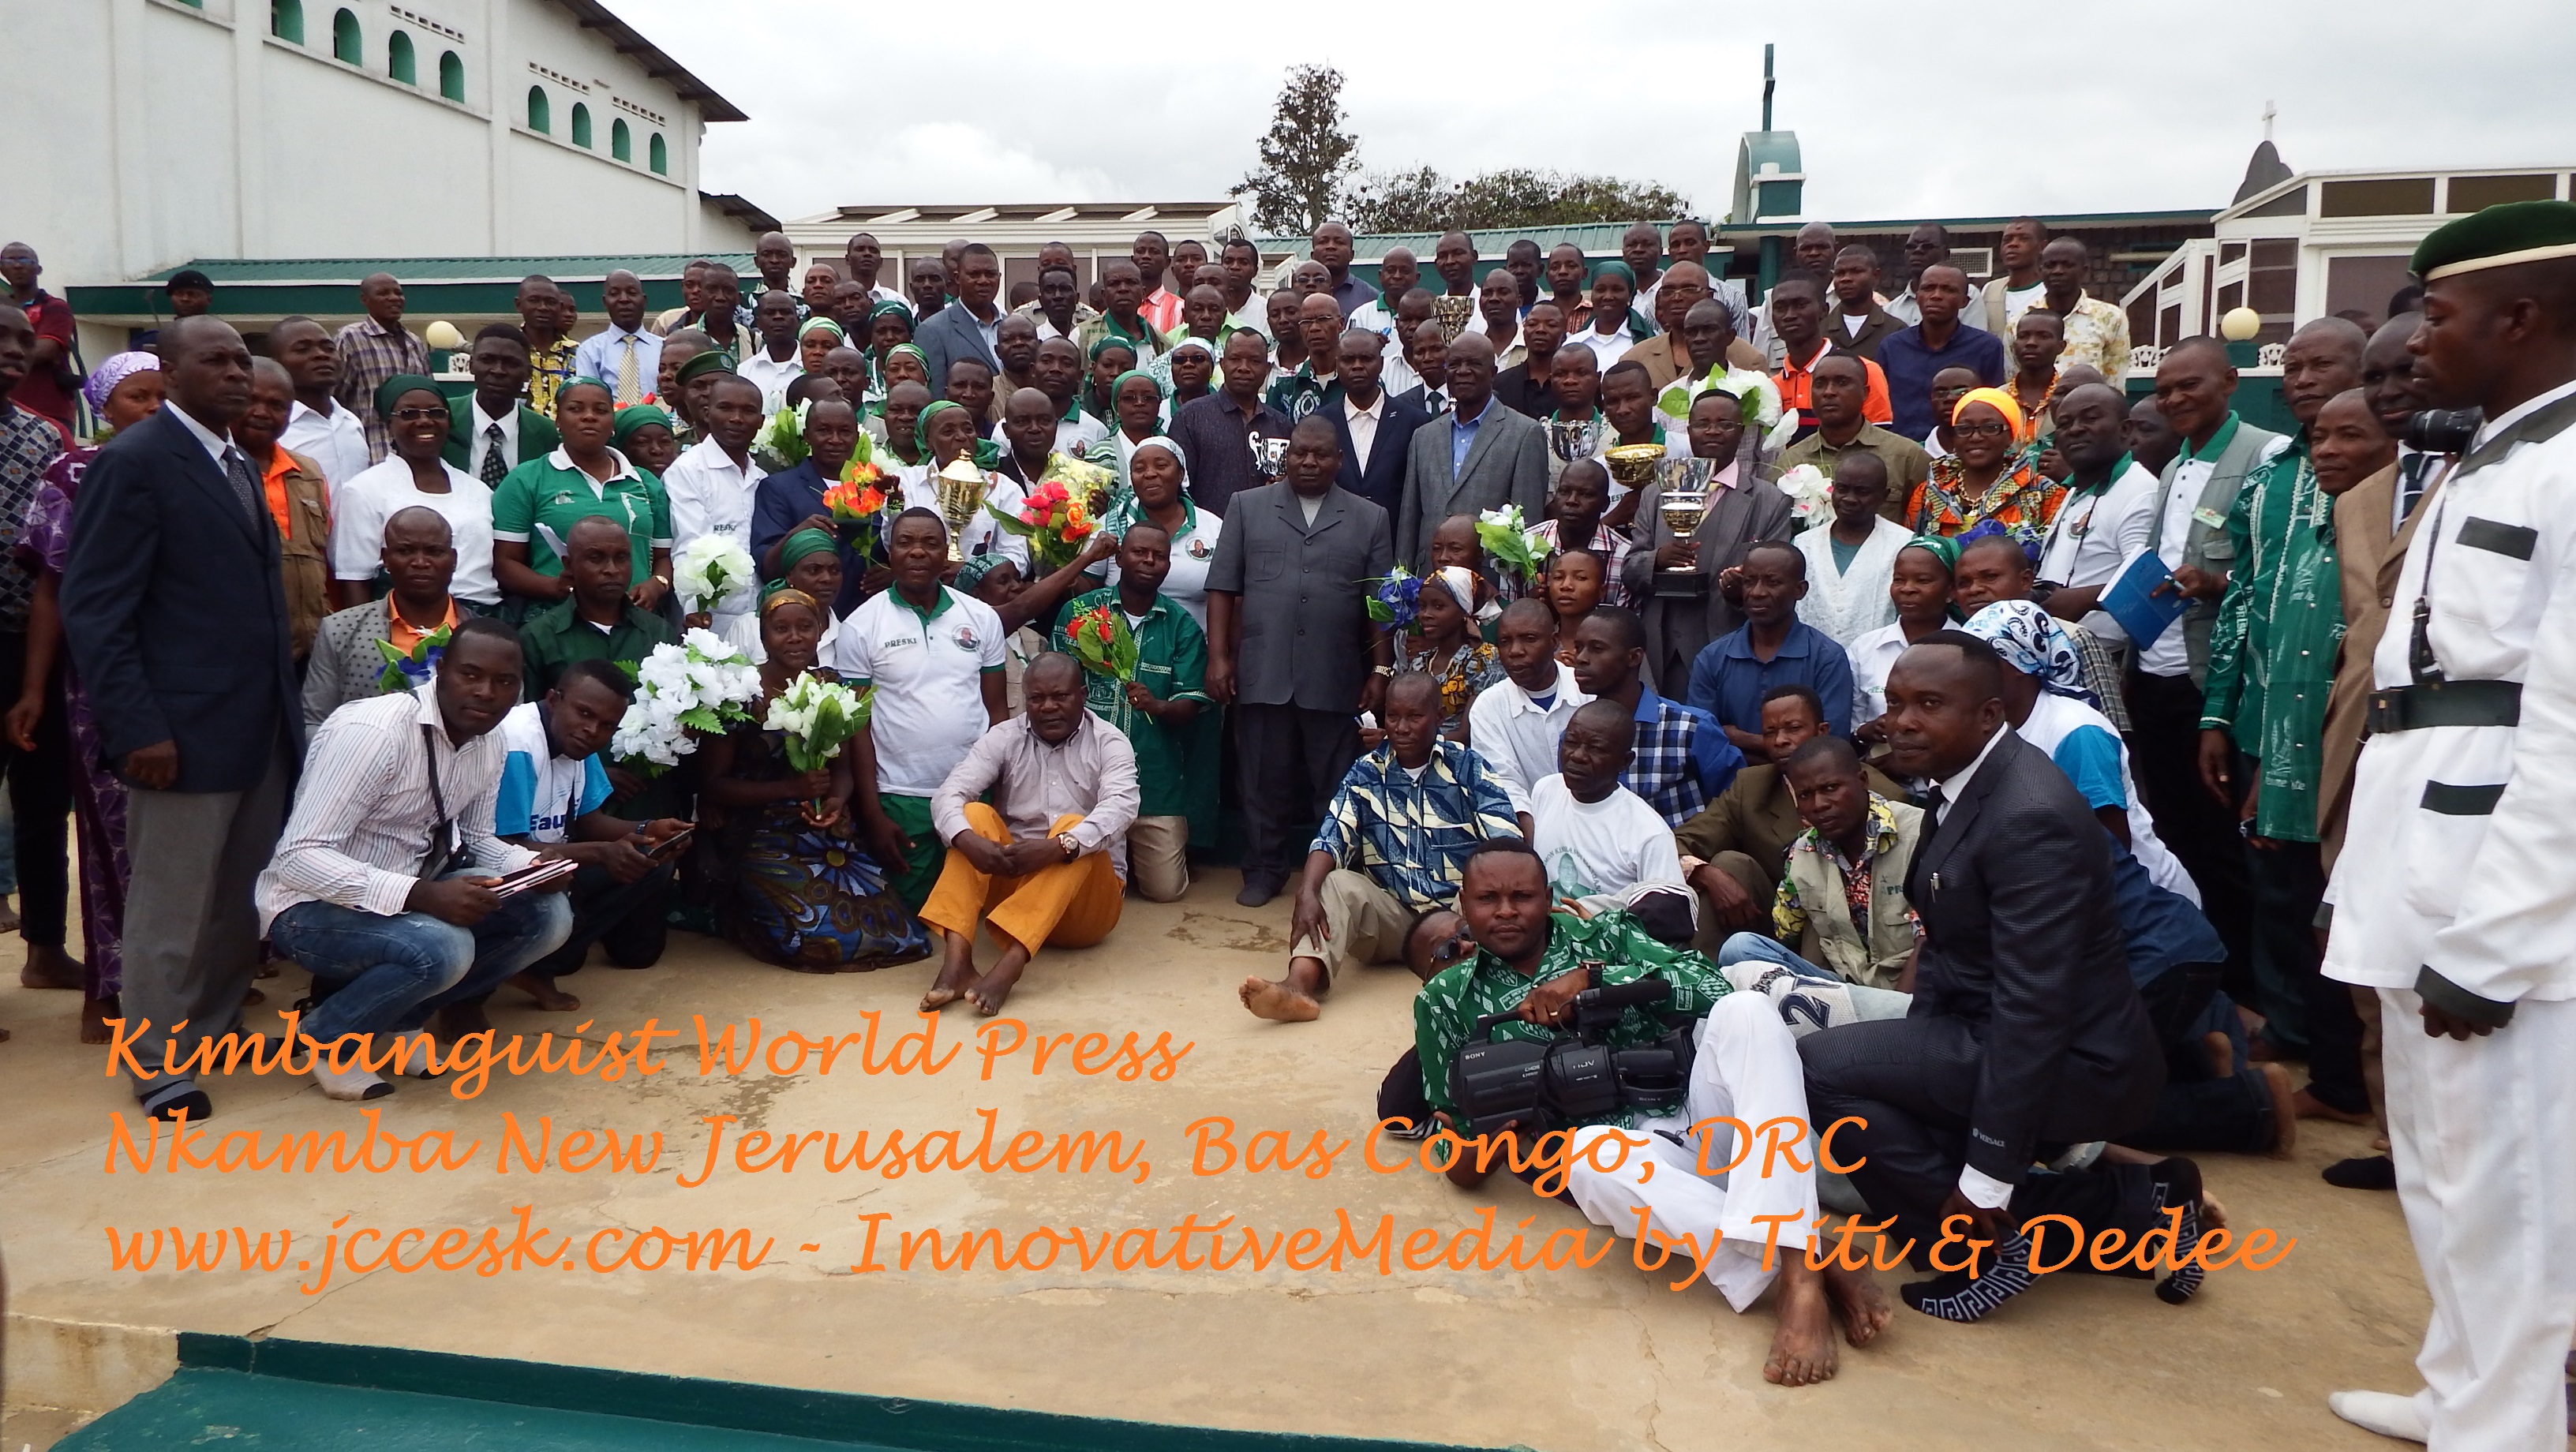 www.jccesk.com-Kimbanguist_World_Press Holy Spirit Papa Simon Kimbangu Kiangani Nkamba New Jerusalem